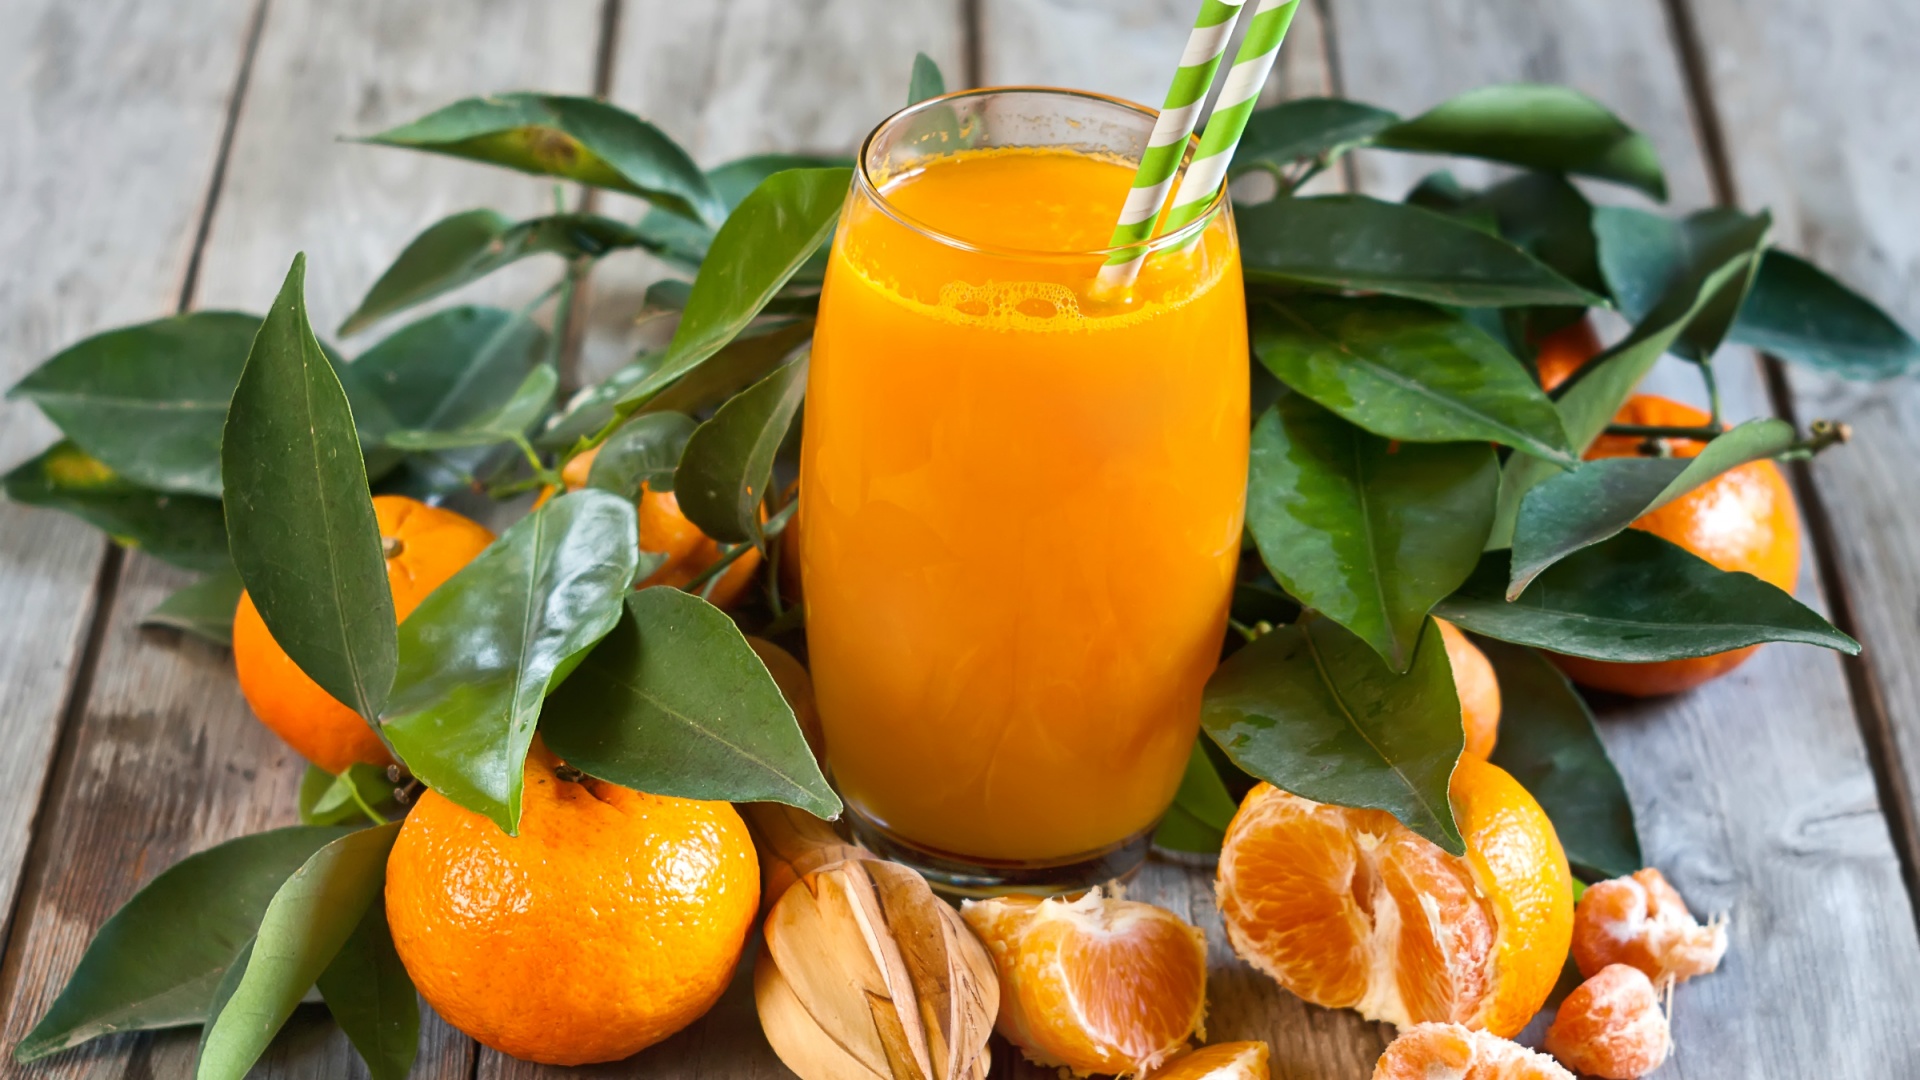 تصویر دلچسب نوشیدنی شیرین میوه نارنگی با کیفیت ویژه 